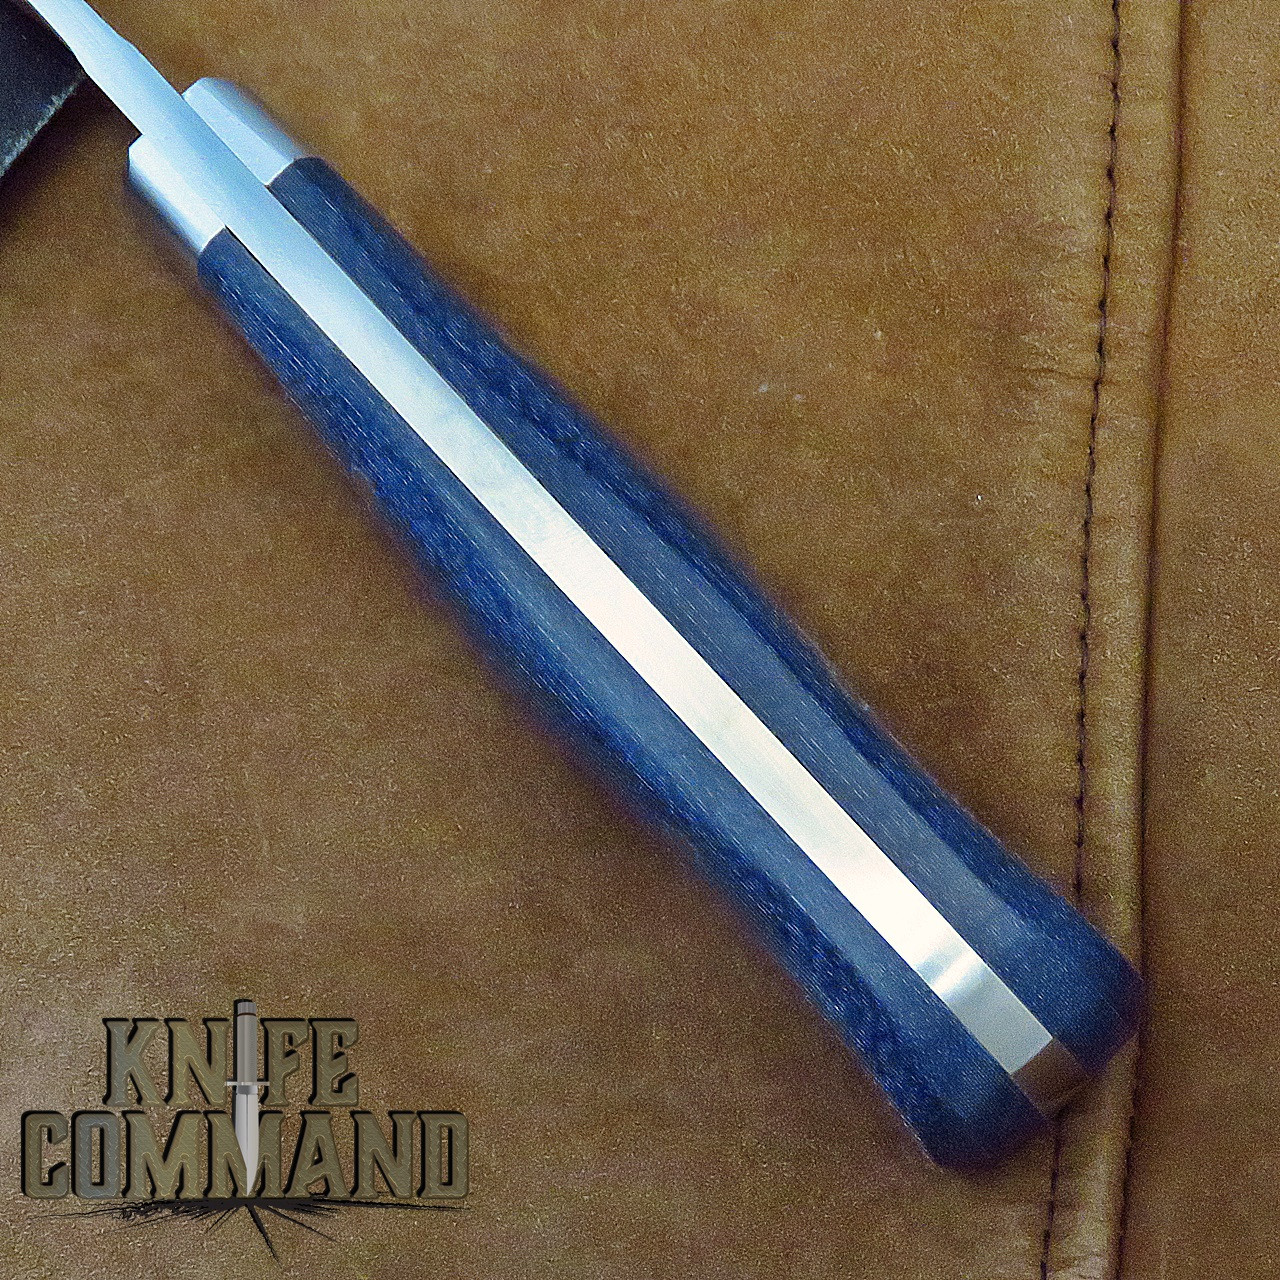 Linder Solingen Blue Jeans Micarta Drop Point Full Tang Hunting Knife 3-1/2" 440c 143609